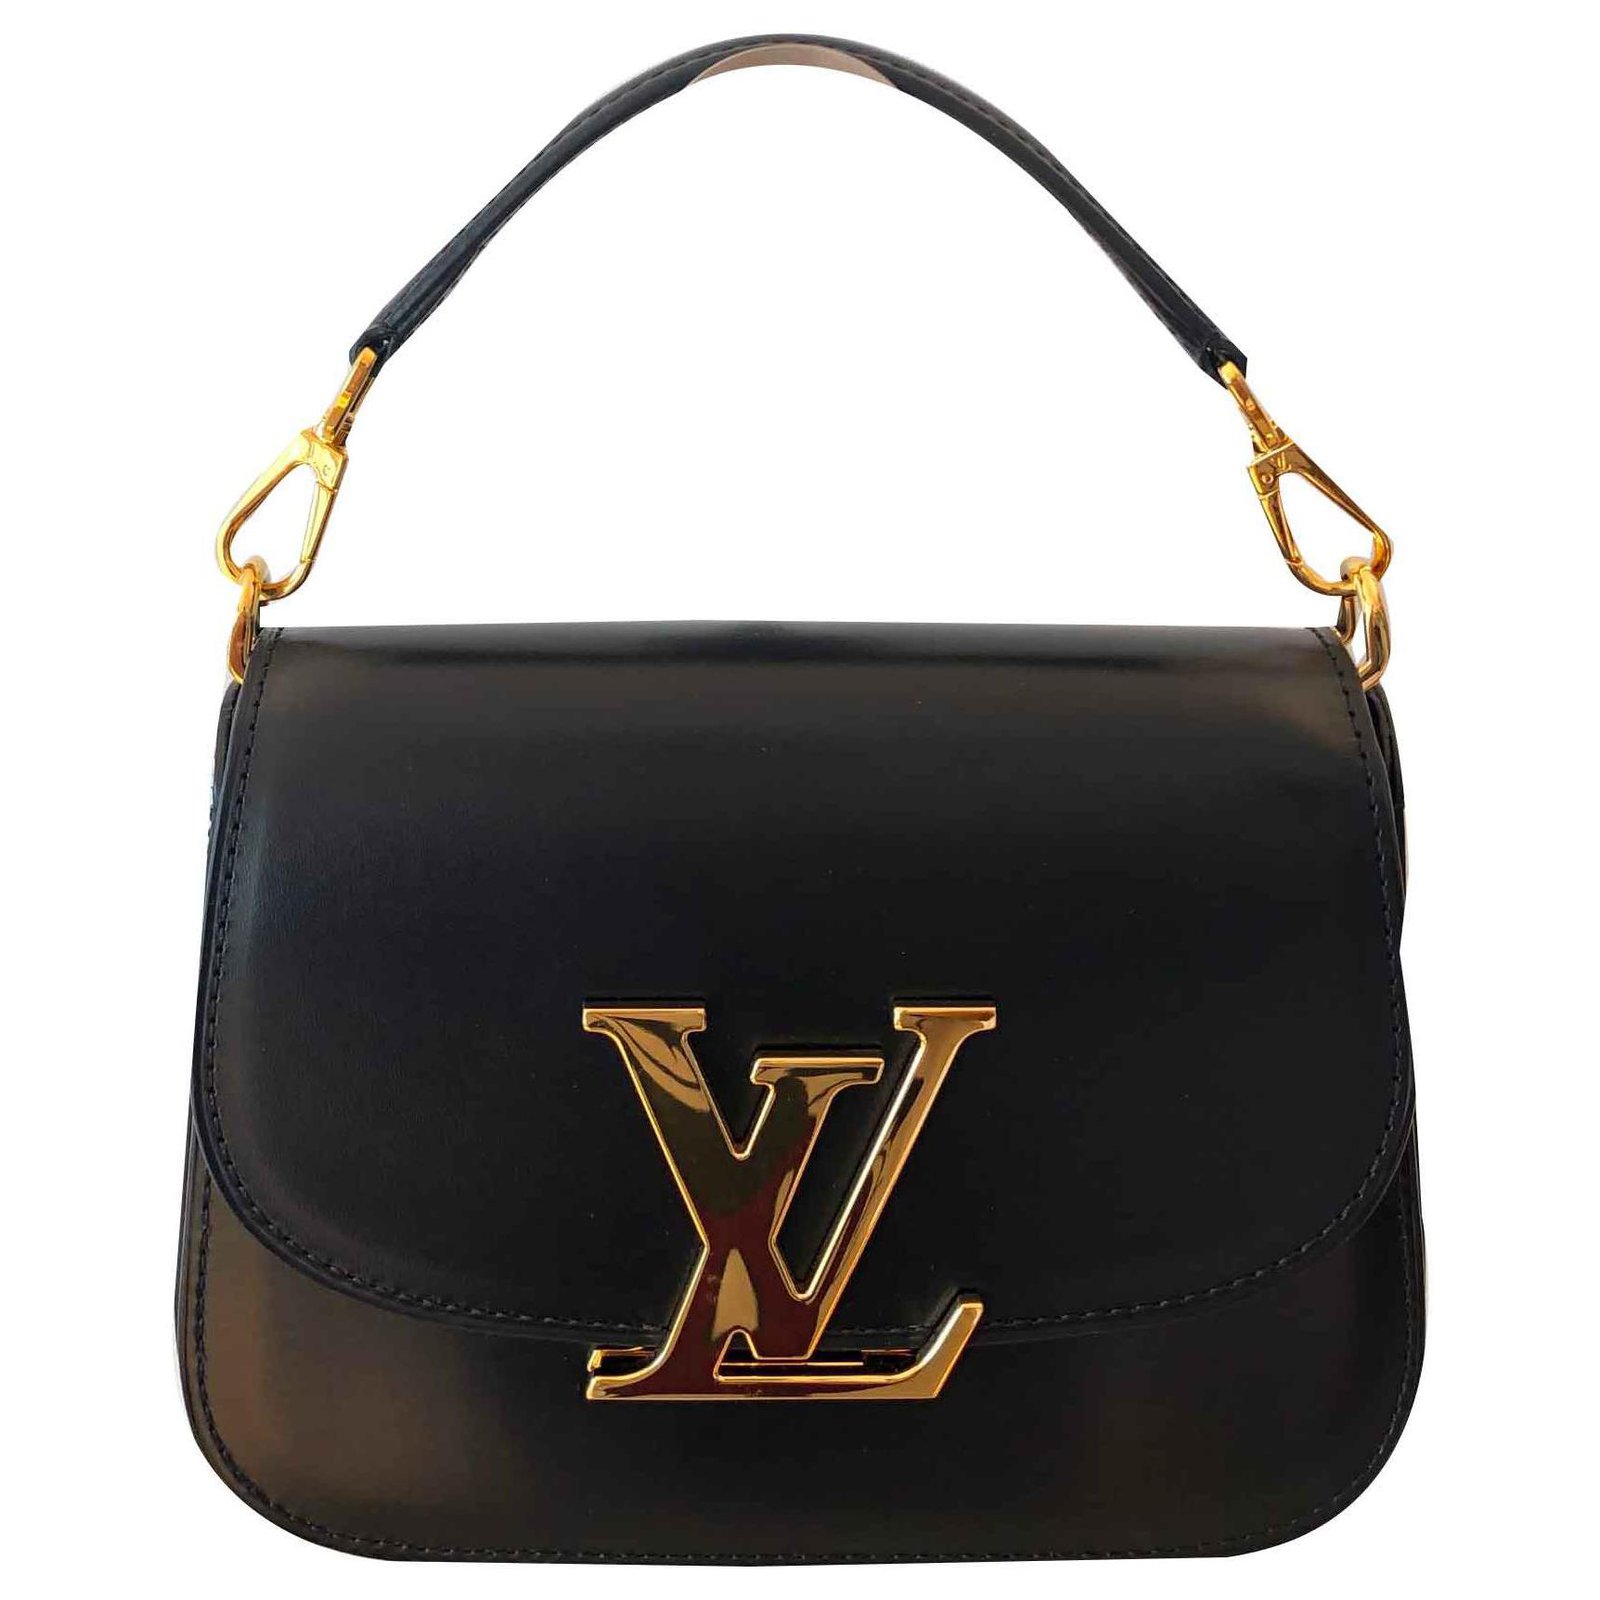 Buy Louis Vuitton Vivienne LV Wallet Veau Cachemire Long 1623301